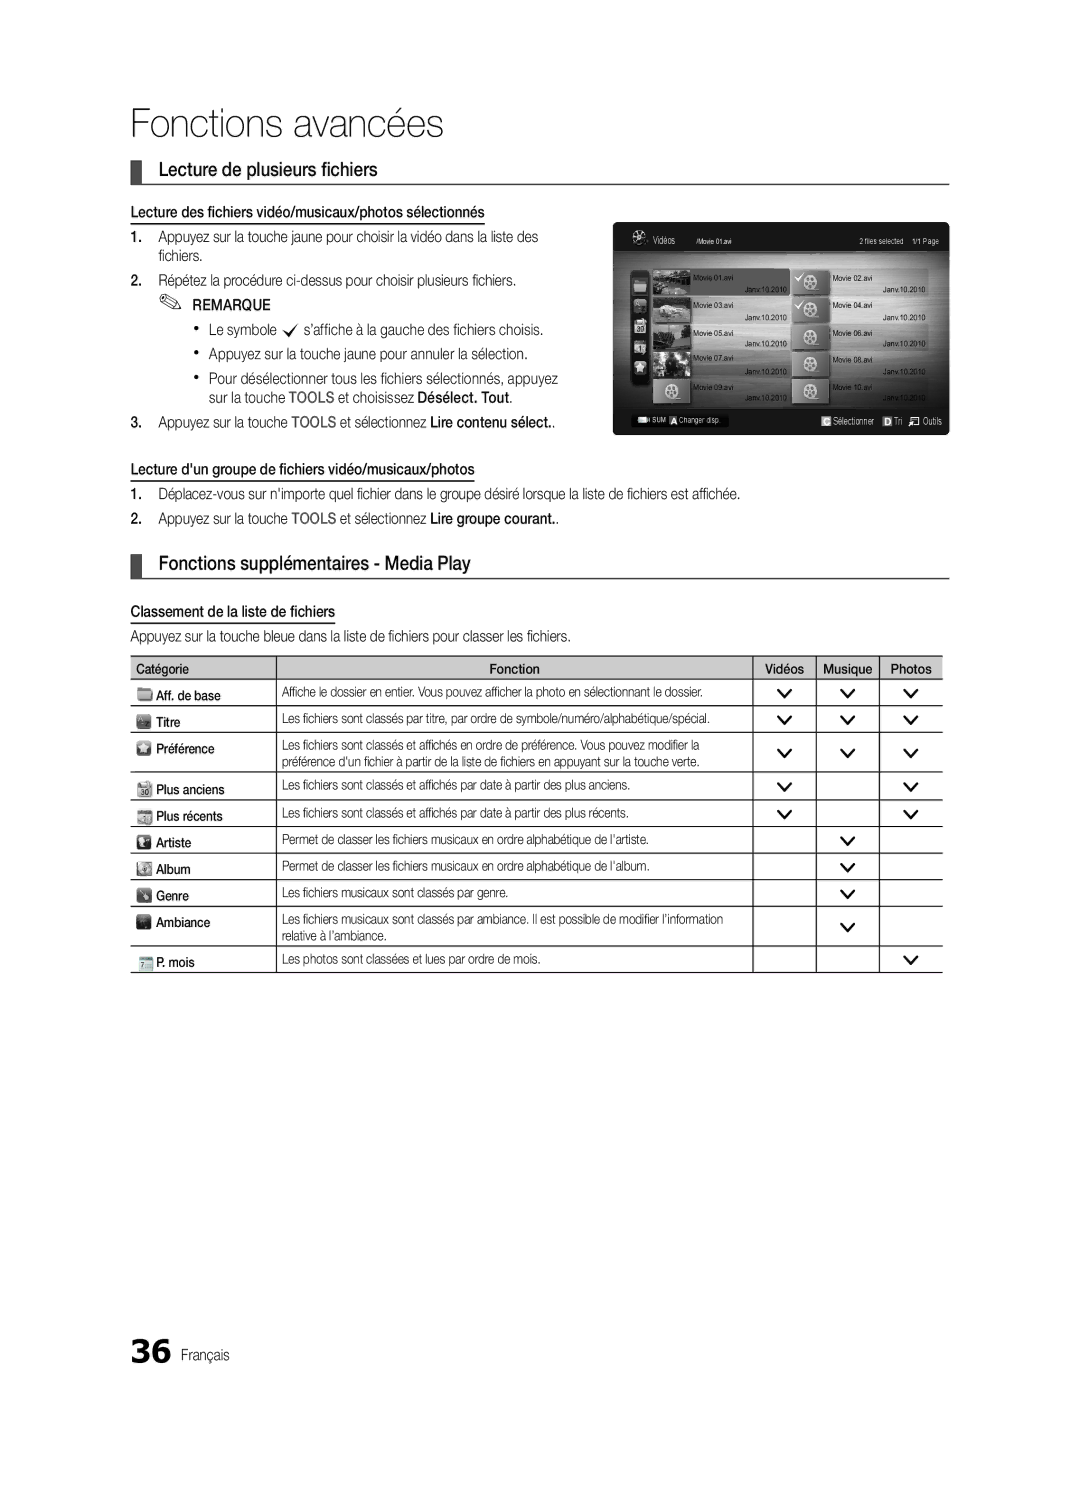 Samsung Series C5, BN68-02625B-02, UN40C5000 user manual Lecture de plusieurs fichiers, Fonctions supplémentaires Media Play 